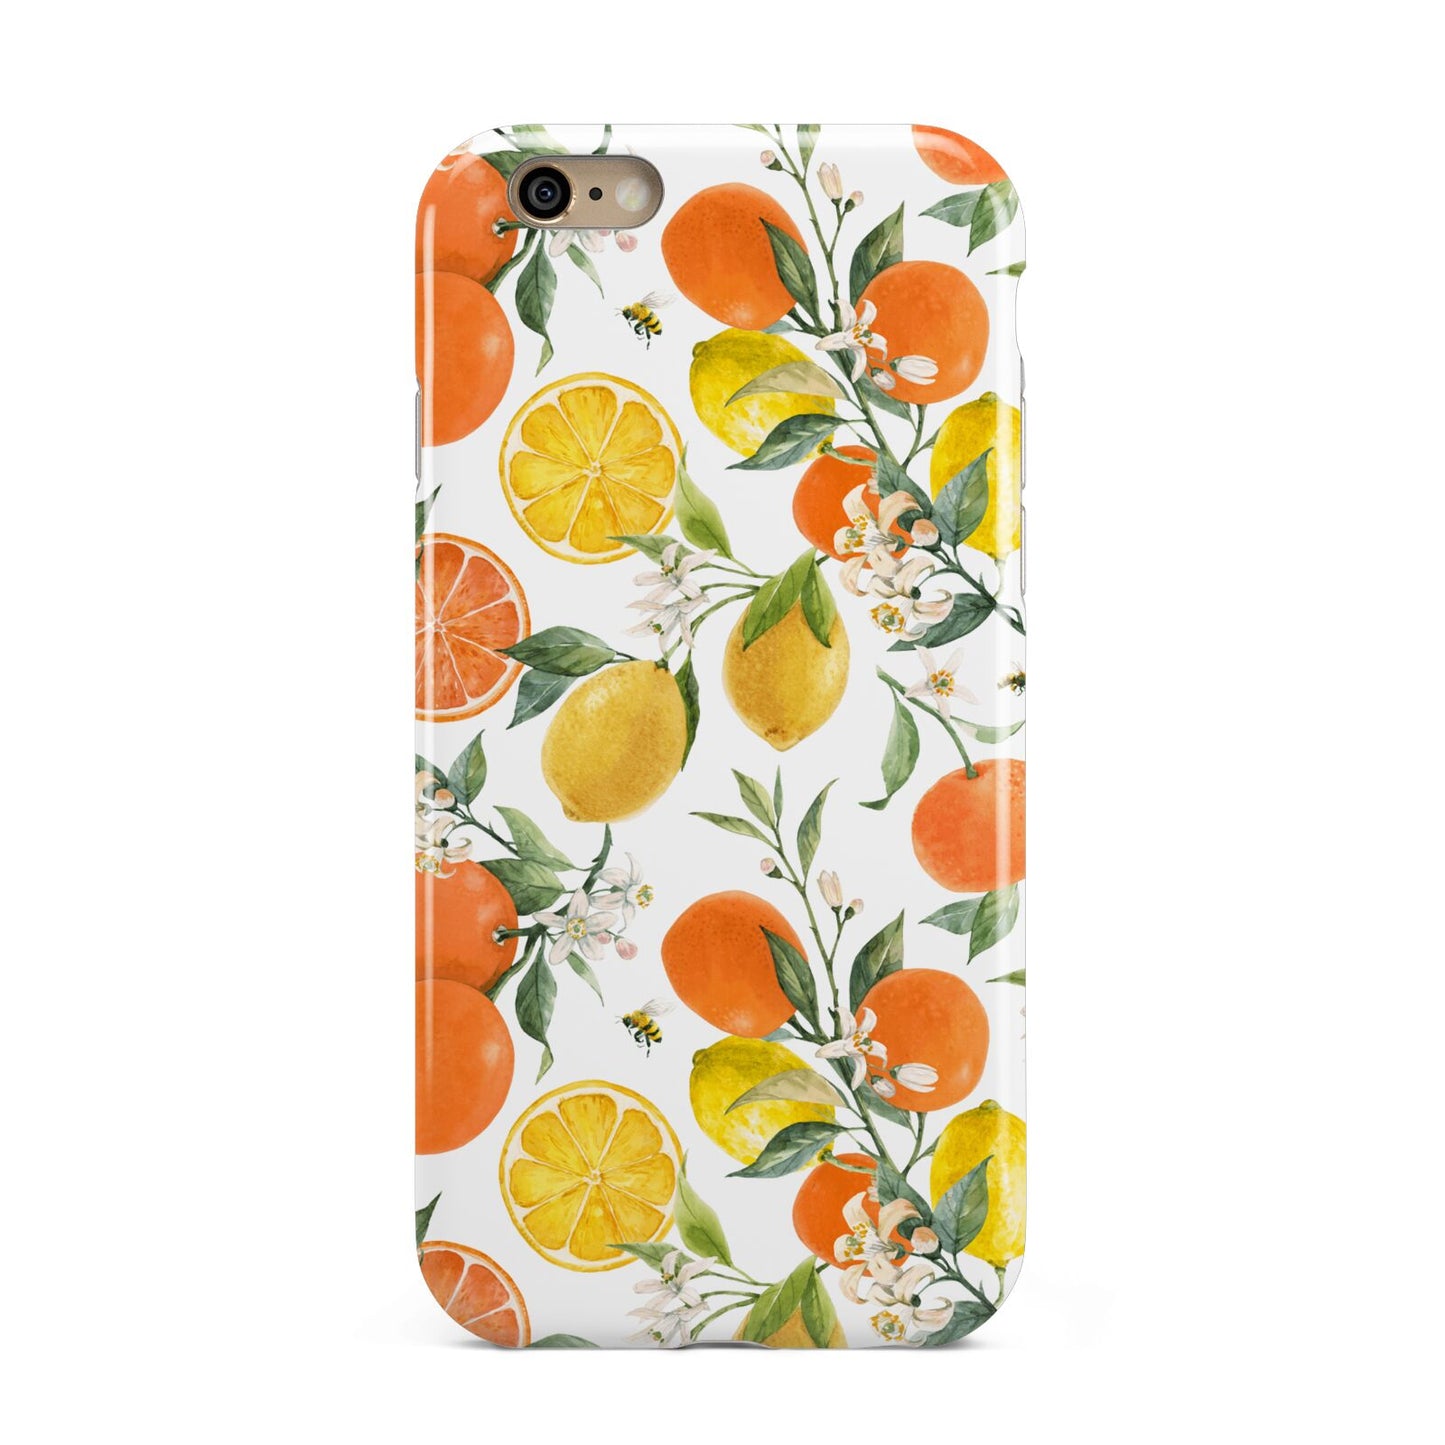 Lemons and Oranges Apple iPhone 6 3D Tough Case